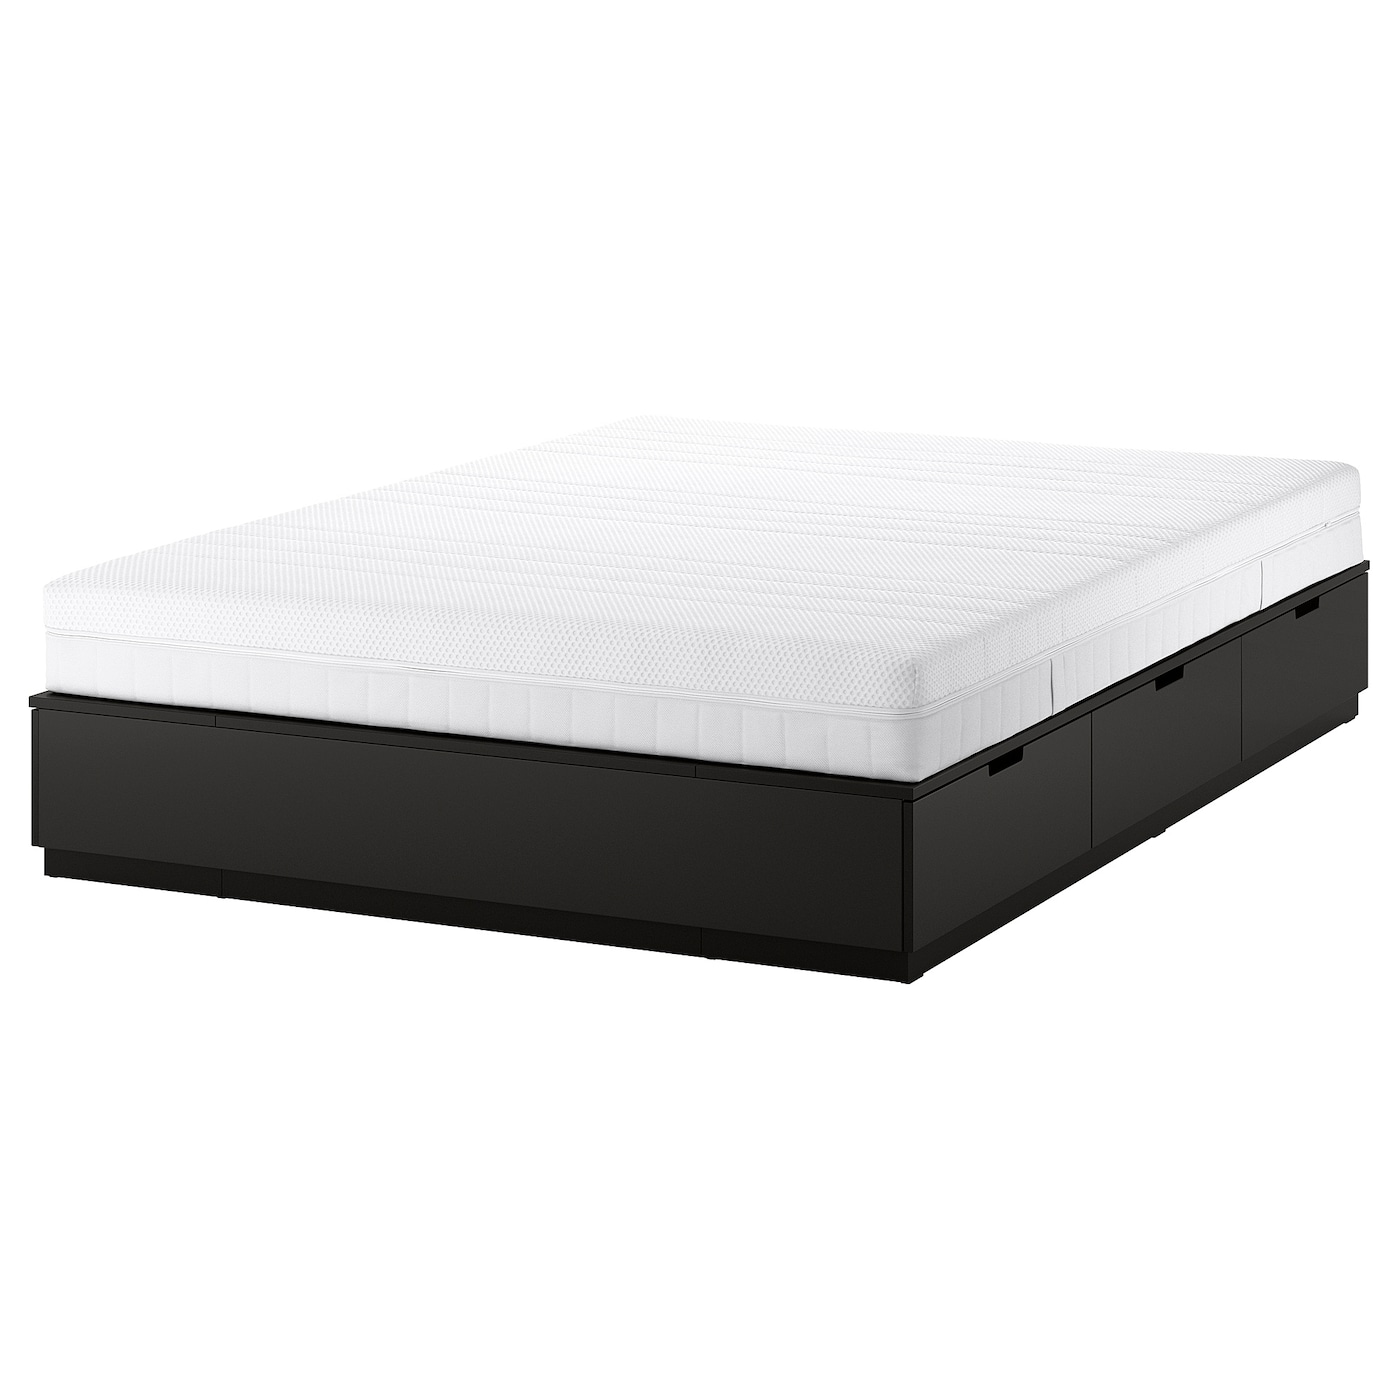 Каркас кровати с ящиком для хранения и матрасом - IKEA NORDLI, 200х140 см, матрас жесткий, черный, НОРДЛИ ИКЕА